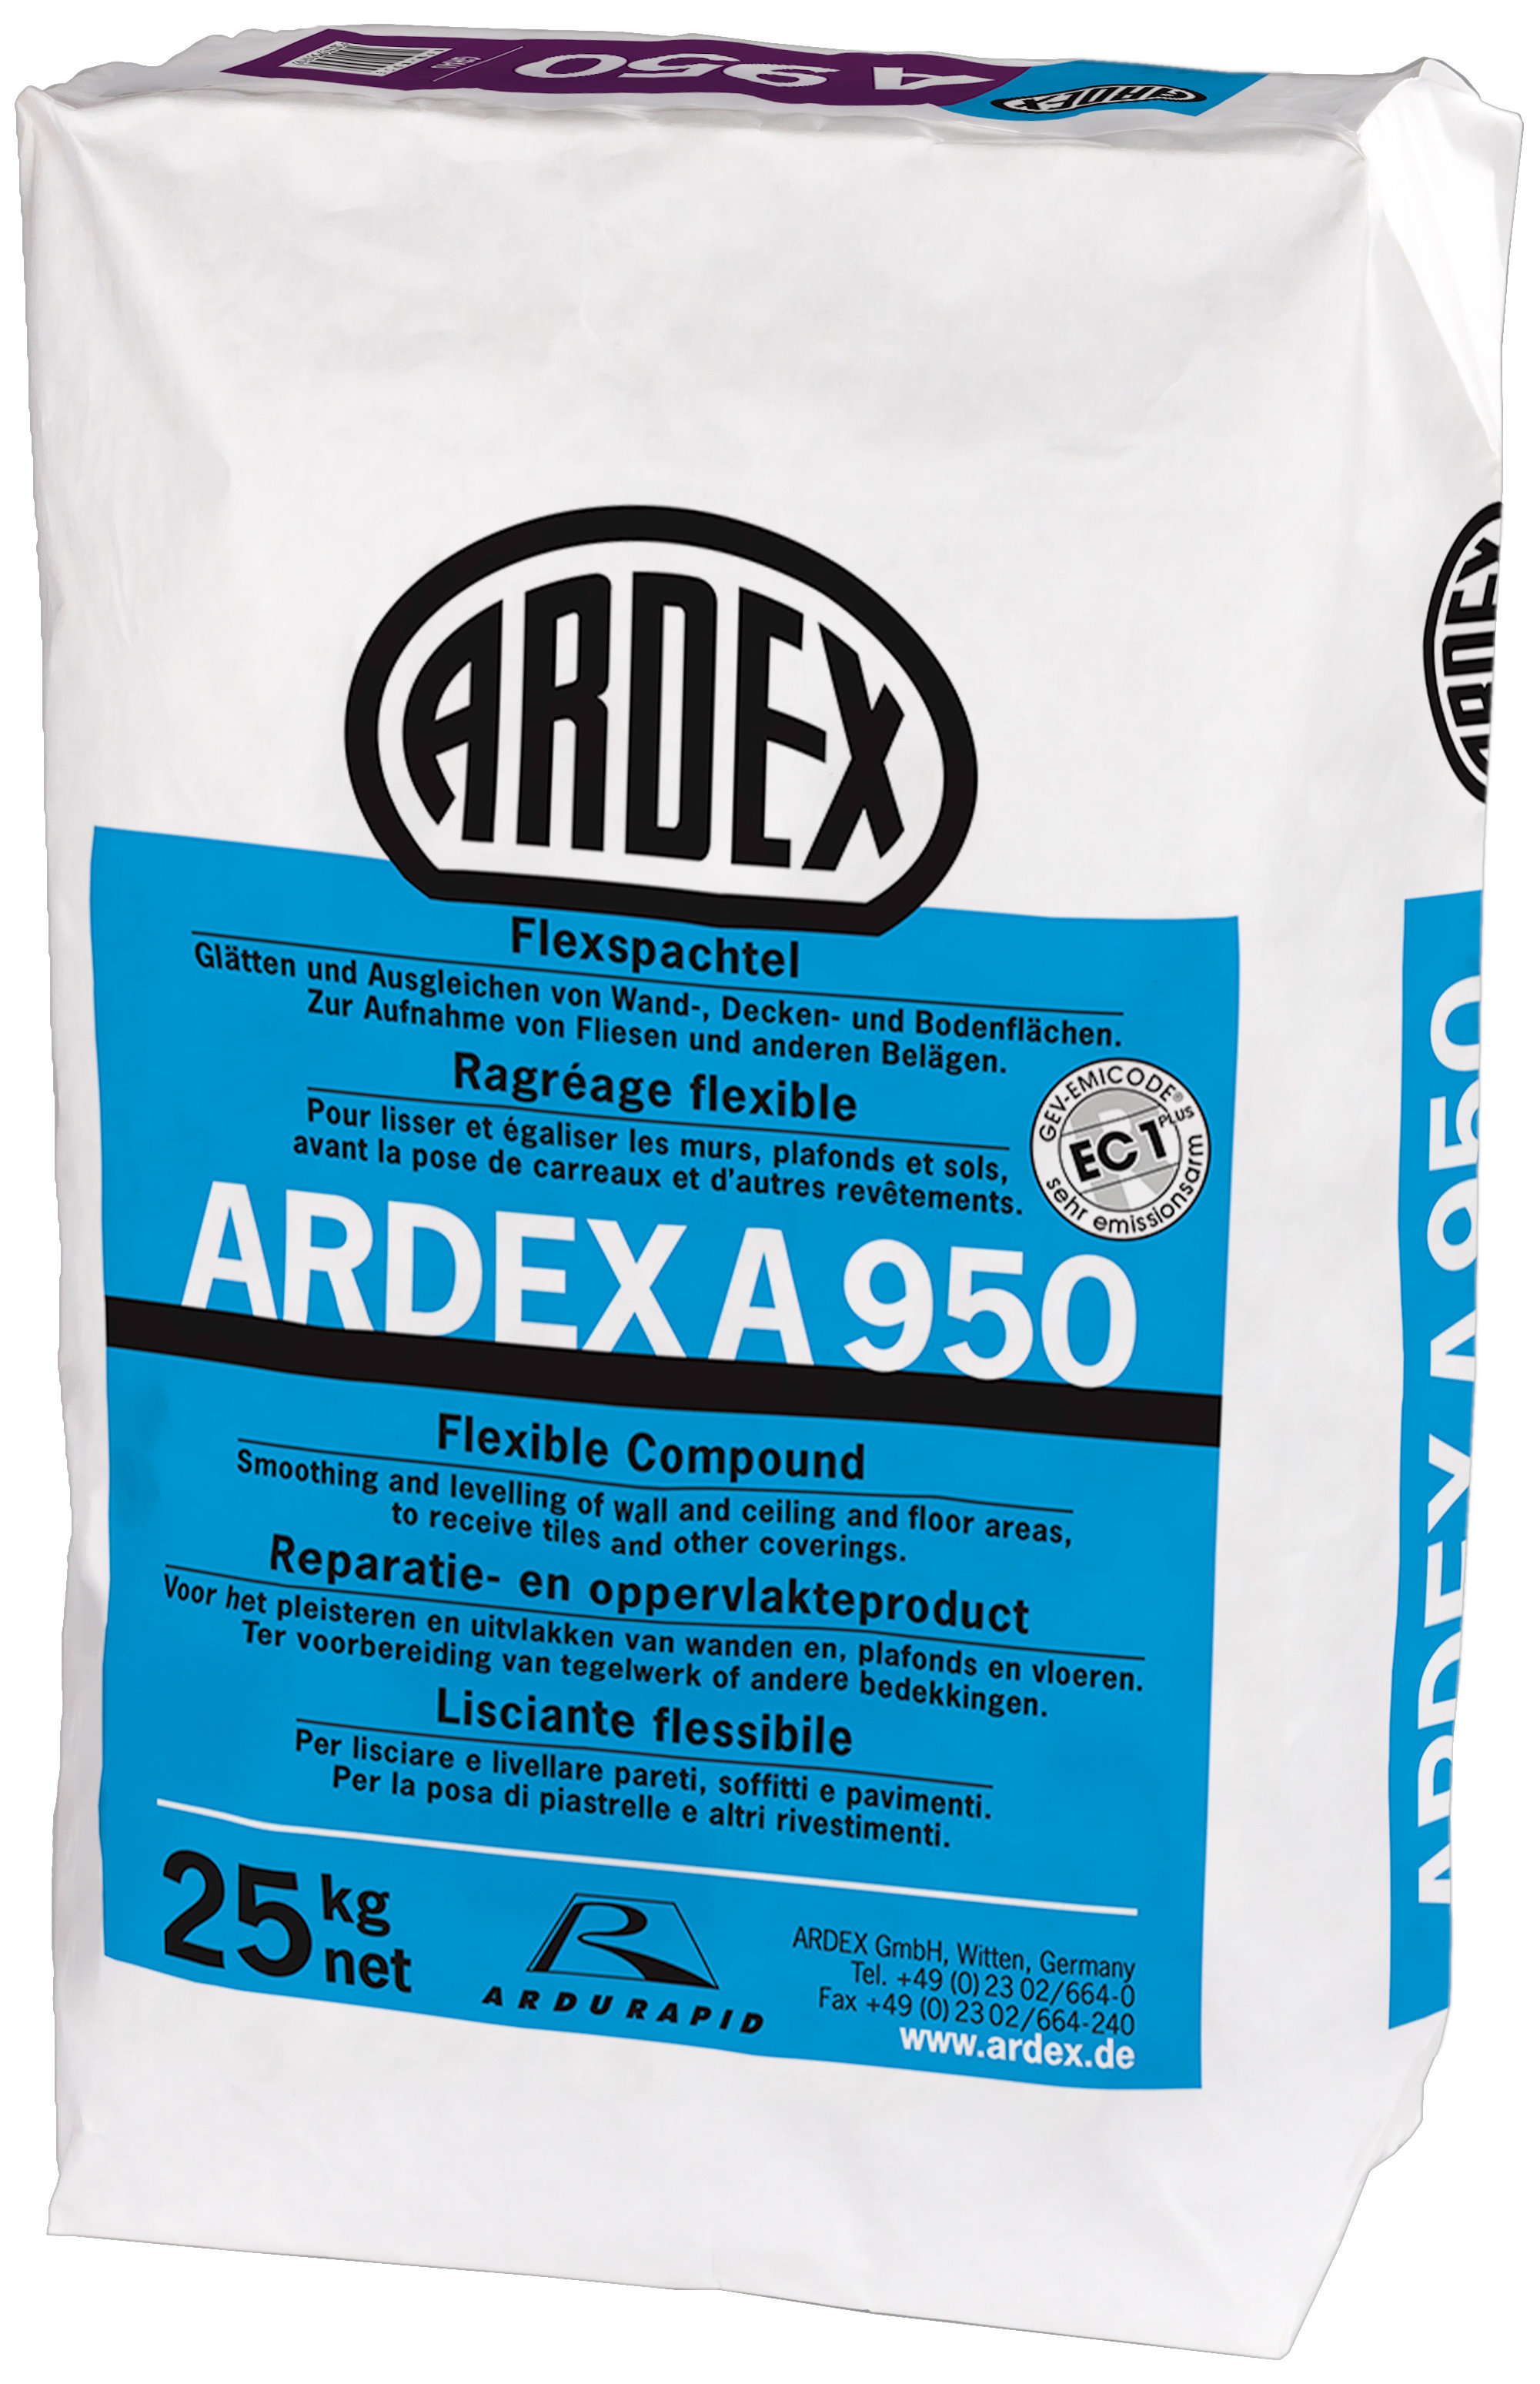 ARDEX A950 Flexspachtel